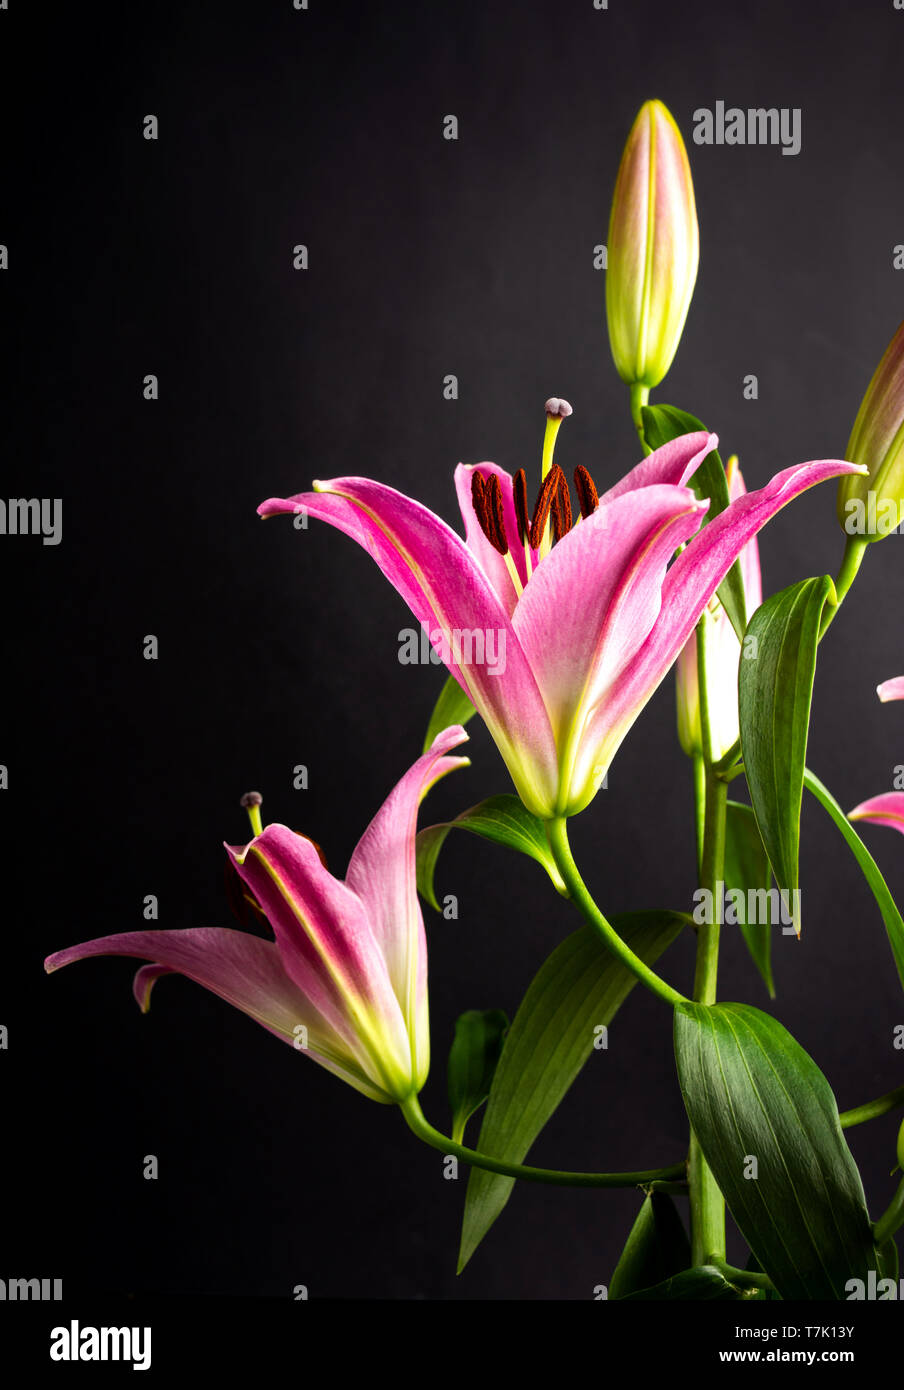 De belles fleurs de lys sur fond sombre libre Banque D'Images